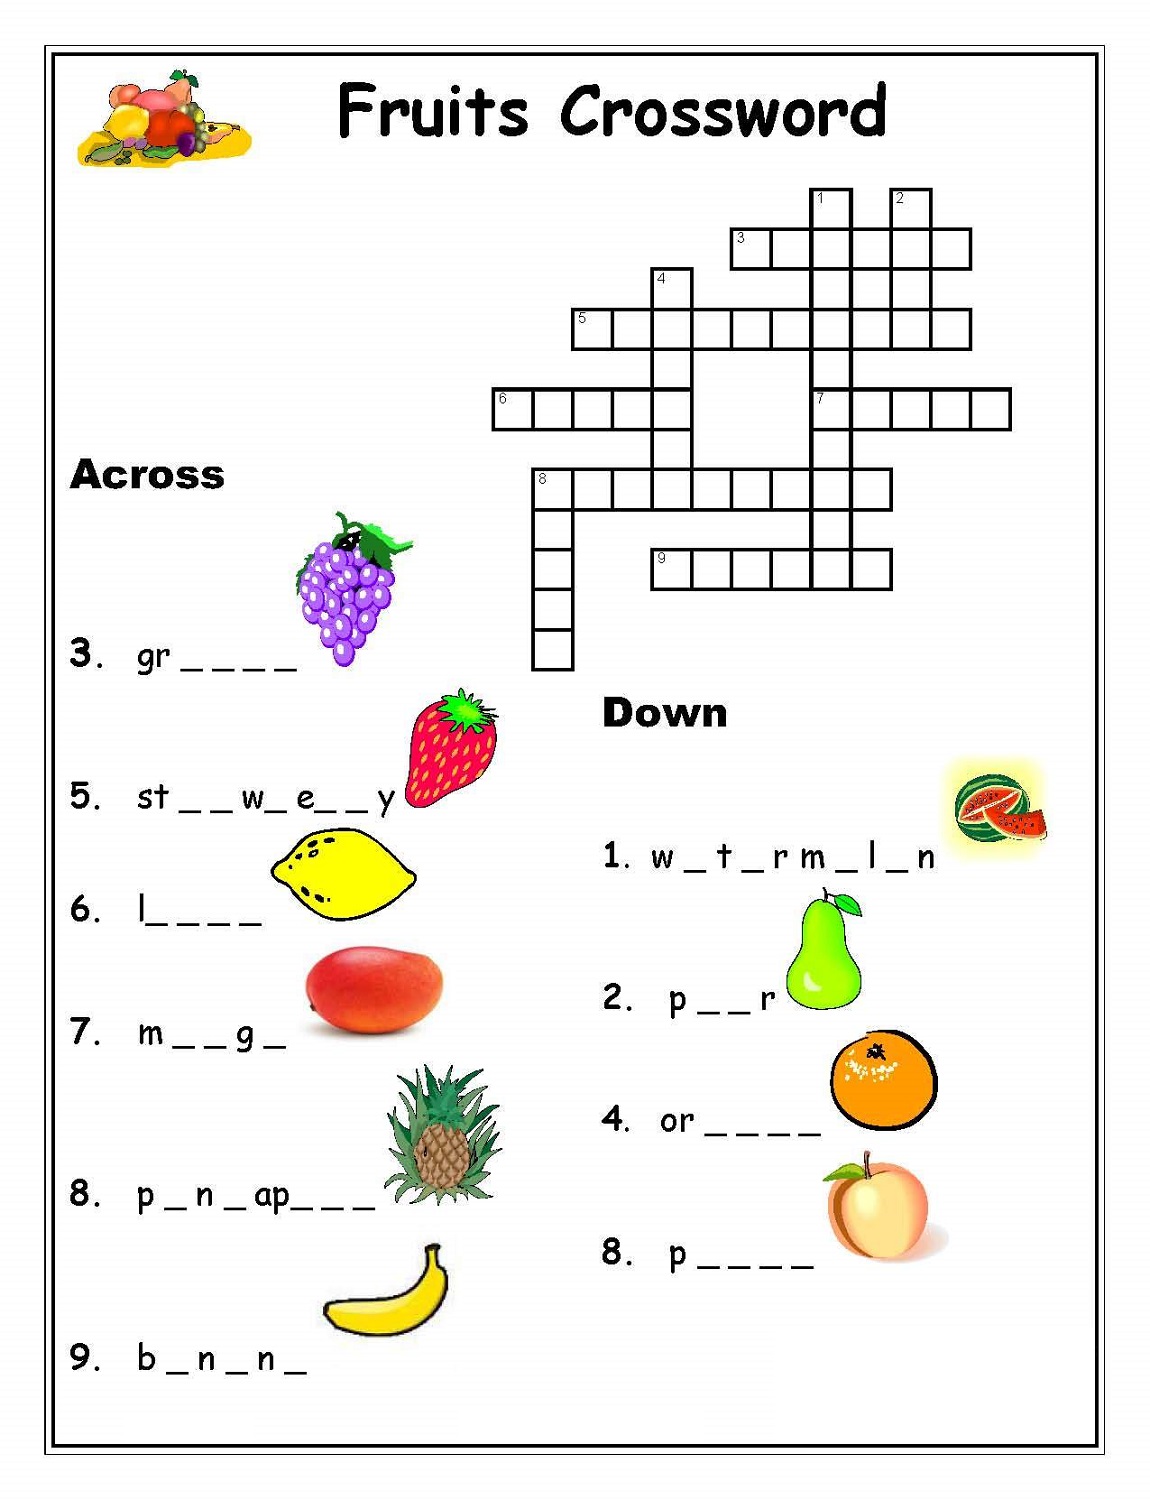 easy-printable-crossword-puzzles-easy-crossword-puzzles-printable-for-seniors-crossword